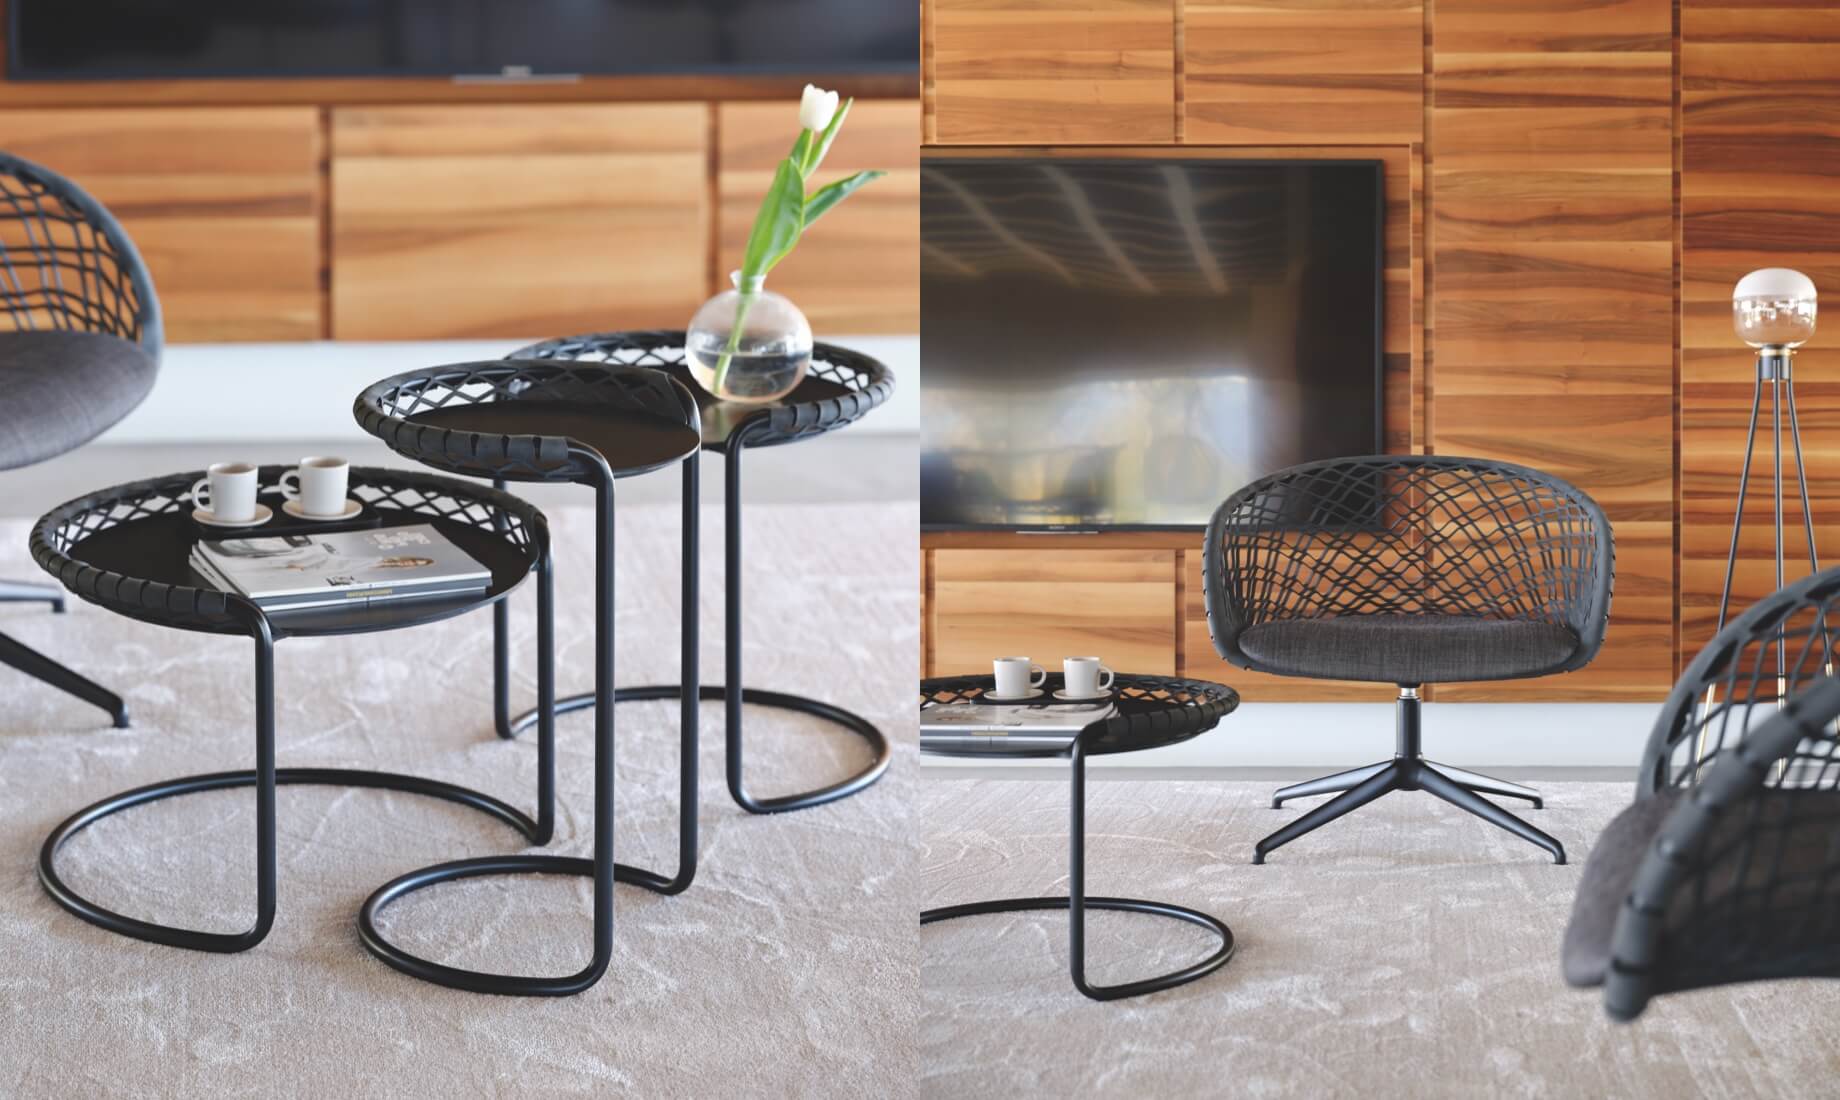 Poltrona lounge e coffee table P47, design Franco Poli. Lampada da terra Ghost design Studio F+B Design.